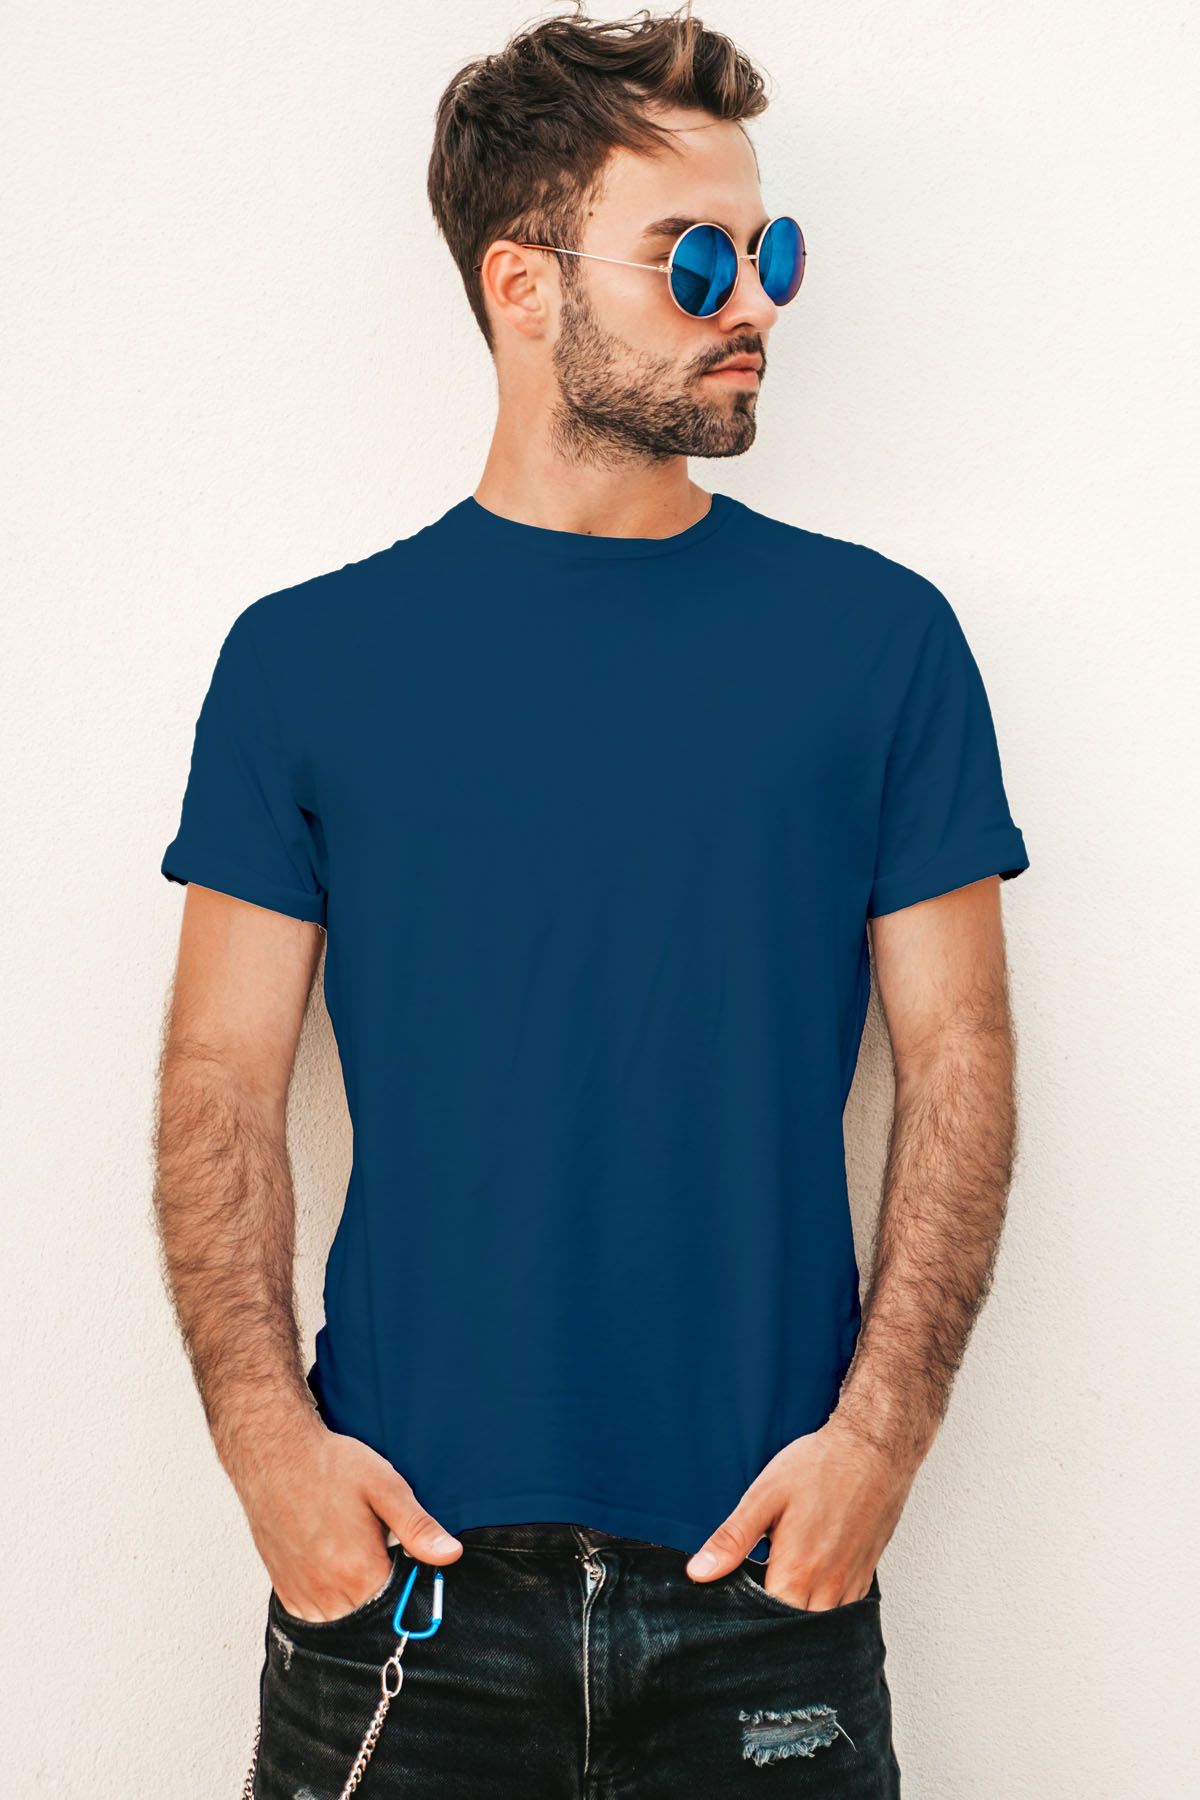 Jerdoni Navy Blue Plain T-Shirt - S